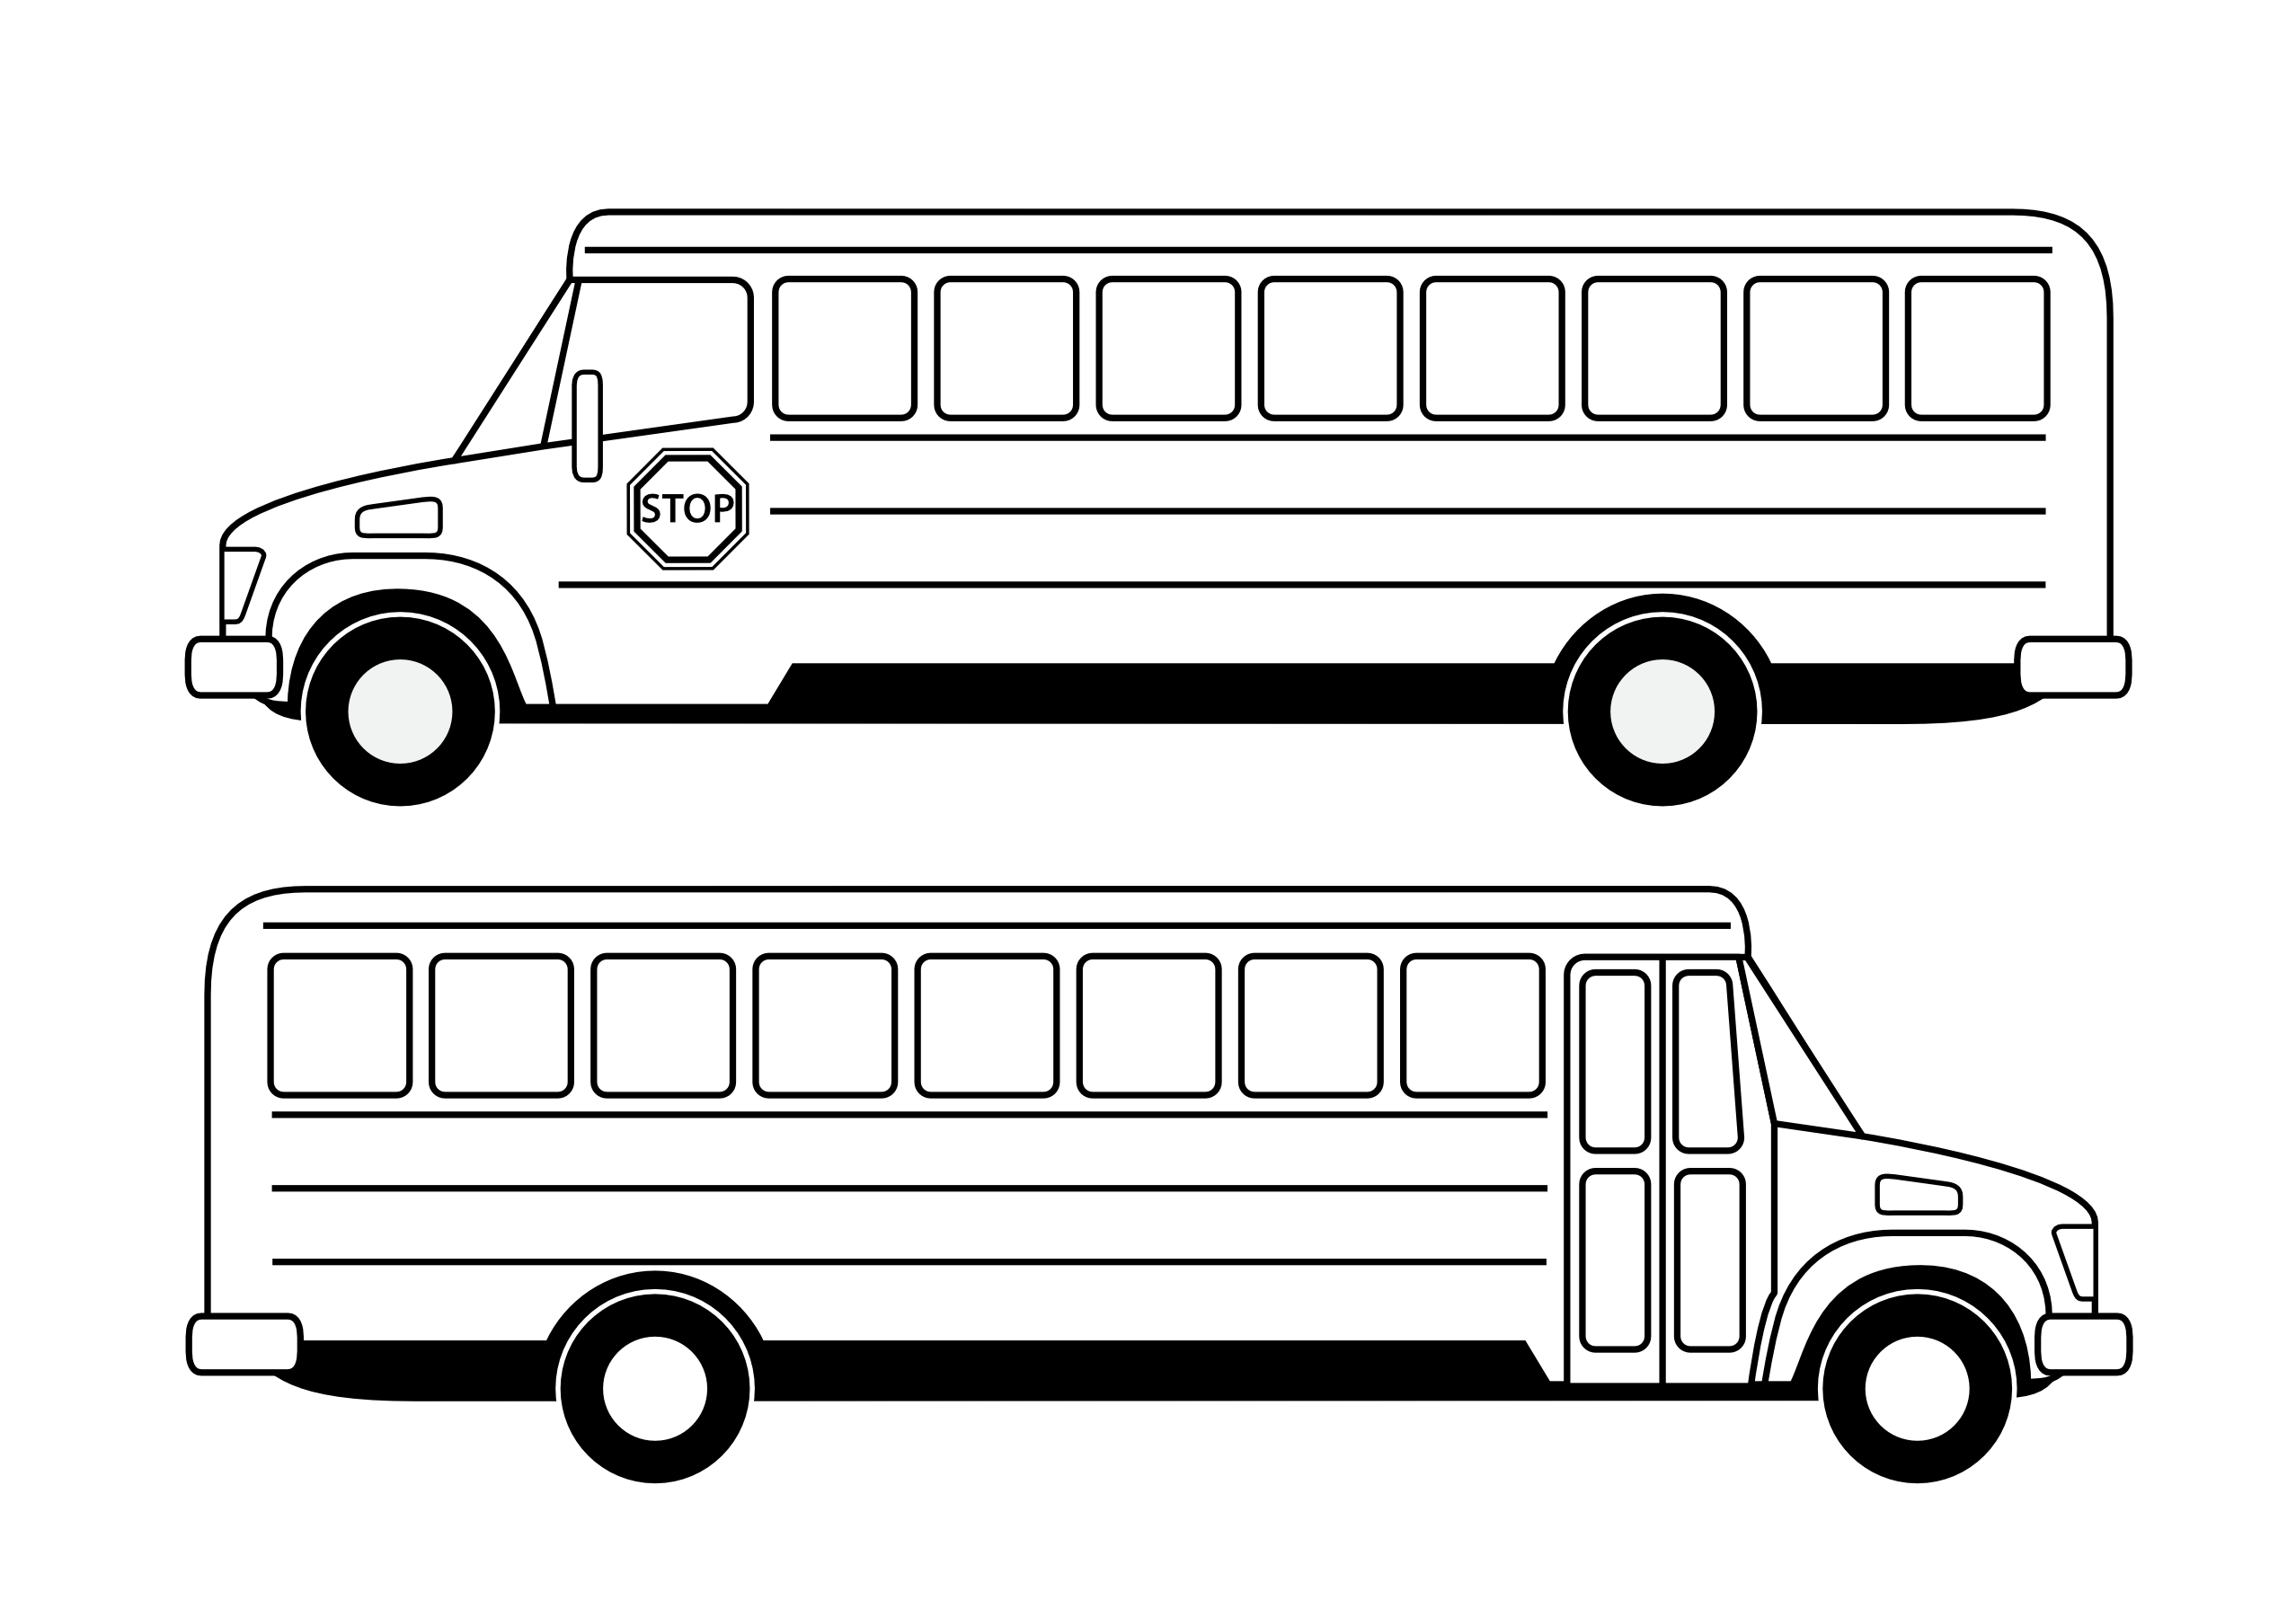 School bus clipart images 3 school clip art vector 5 2 clipartix